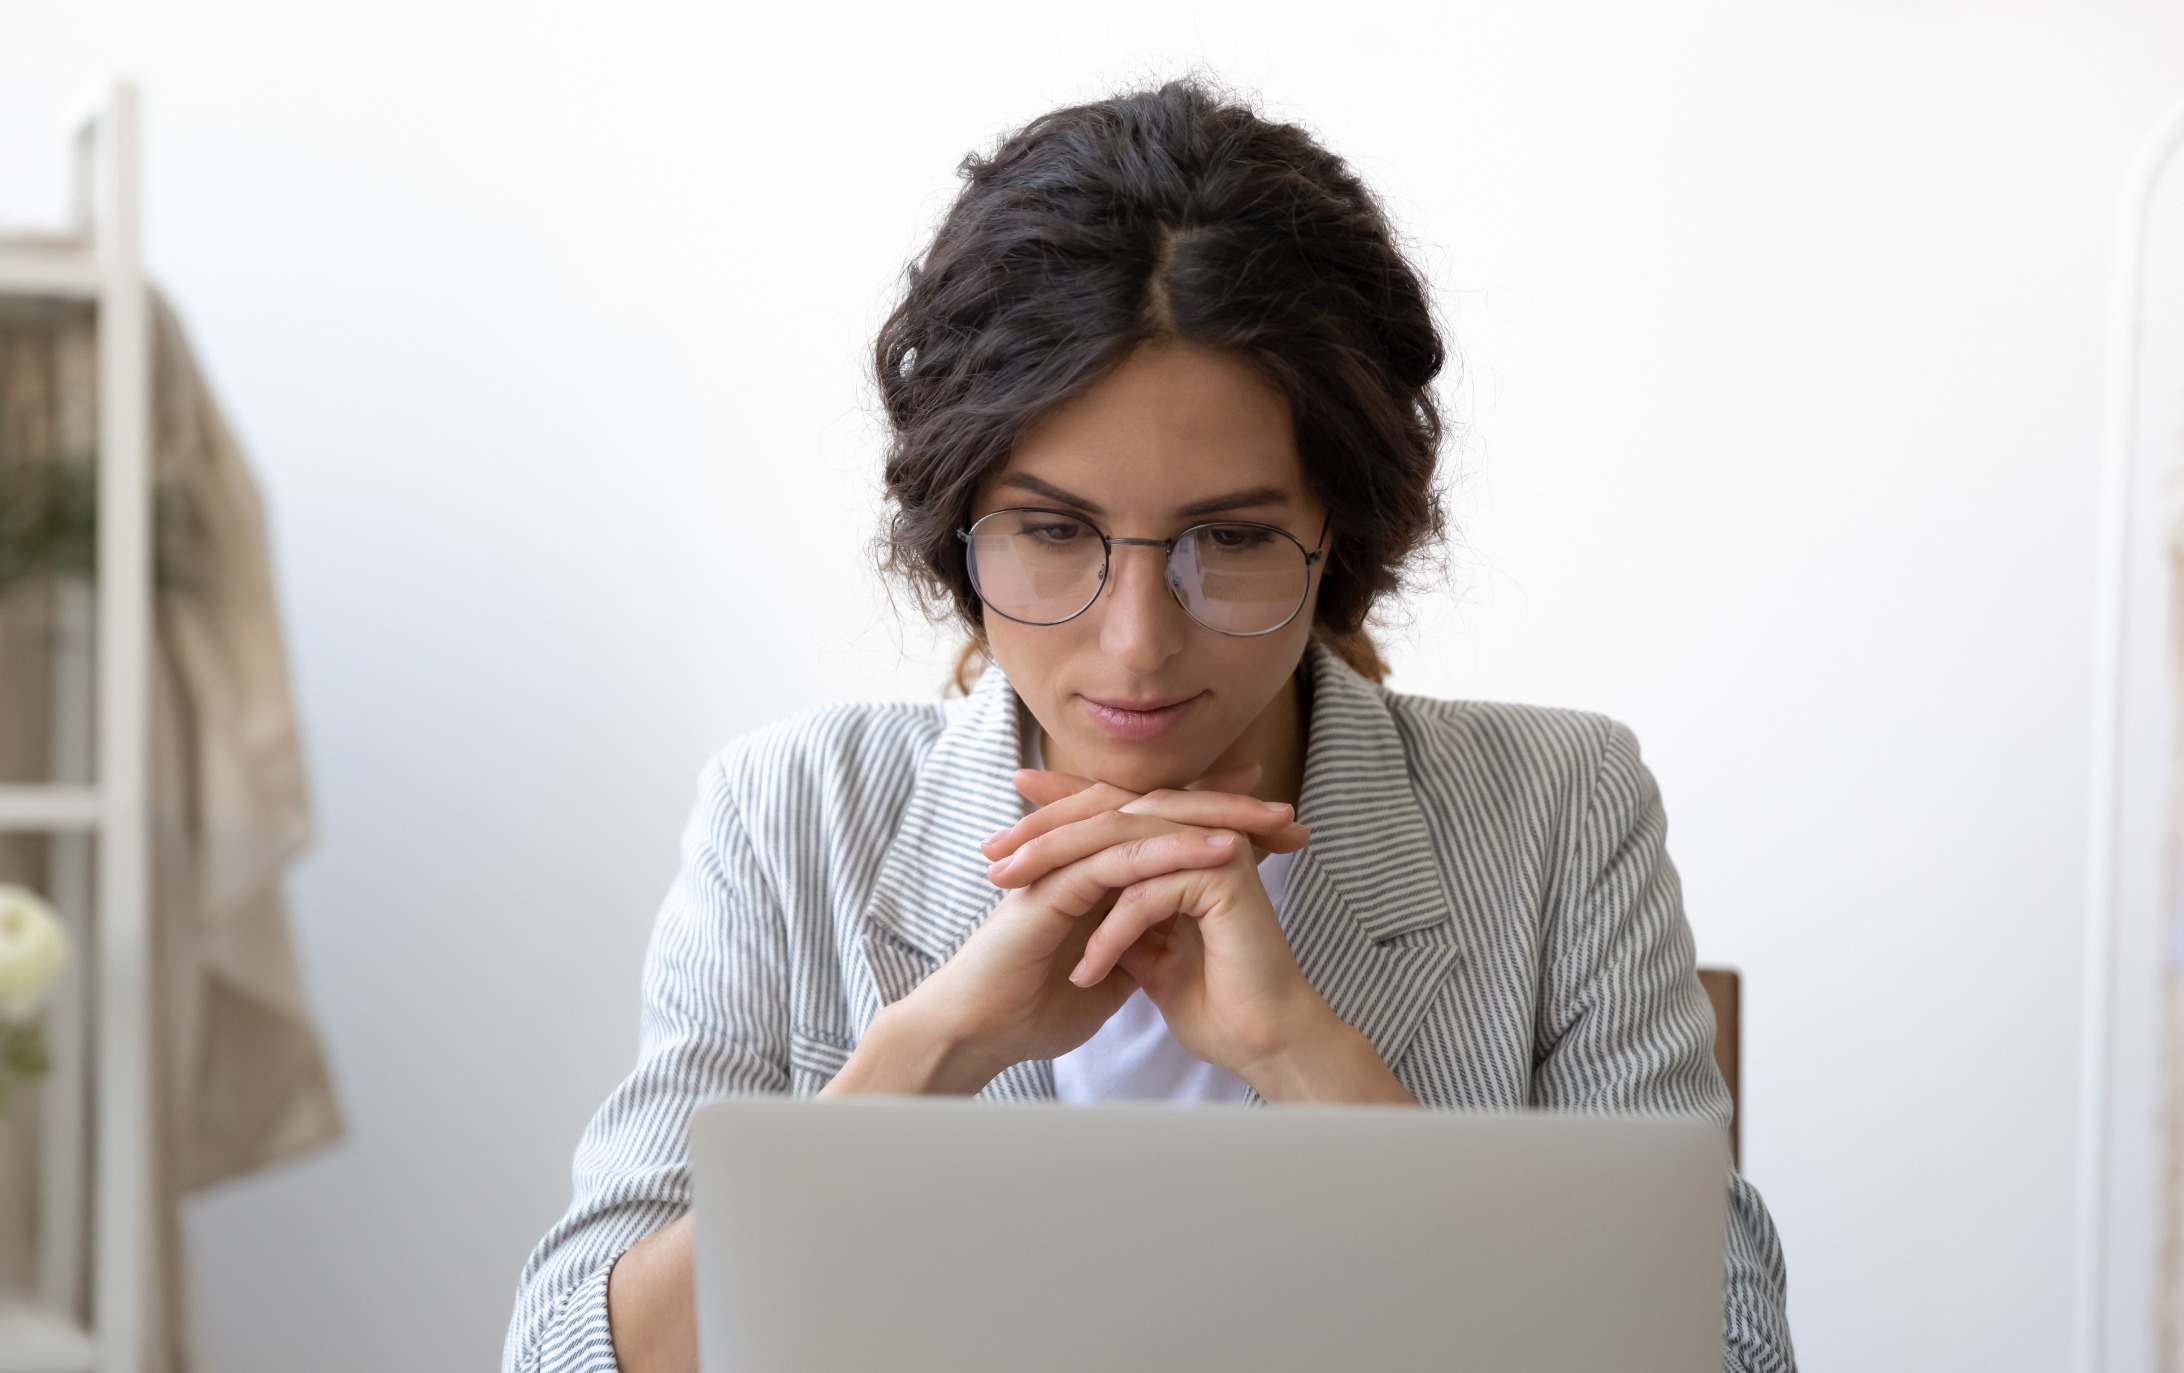 Een vrouw leest iets op haar laptop en denkt na over hoe ze een accountant zal kiezen voor haar kleine onderneming.